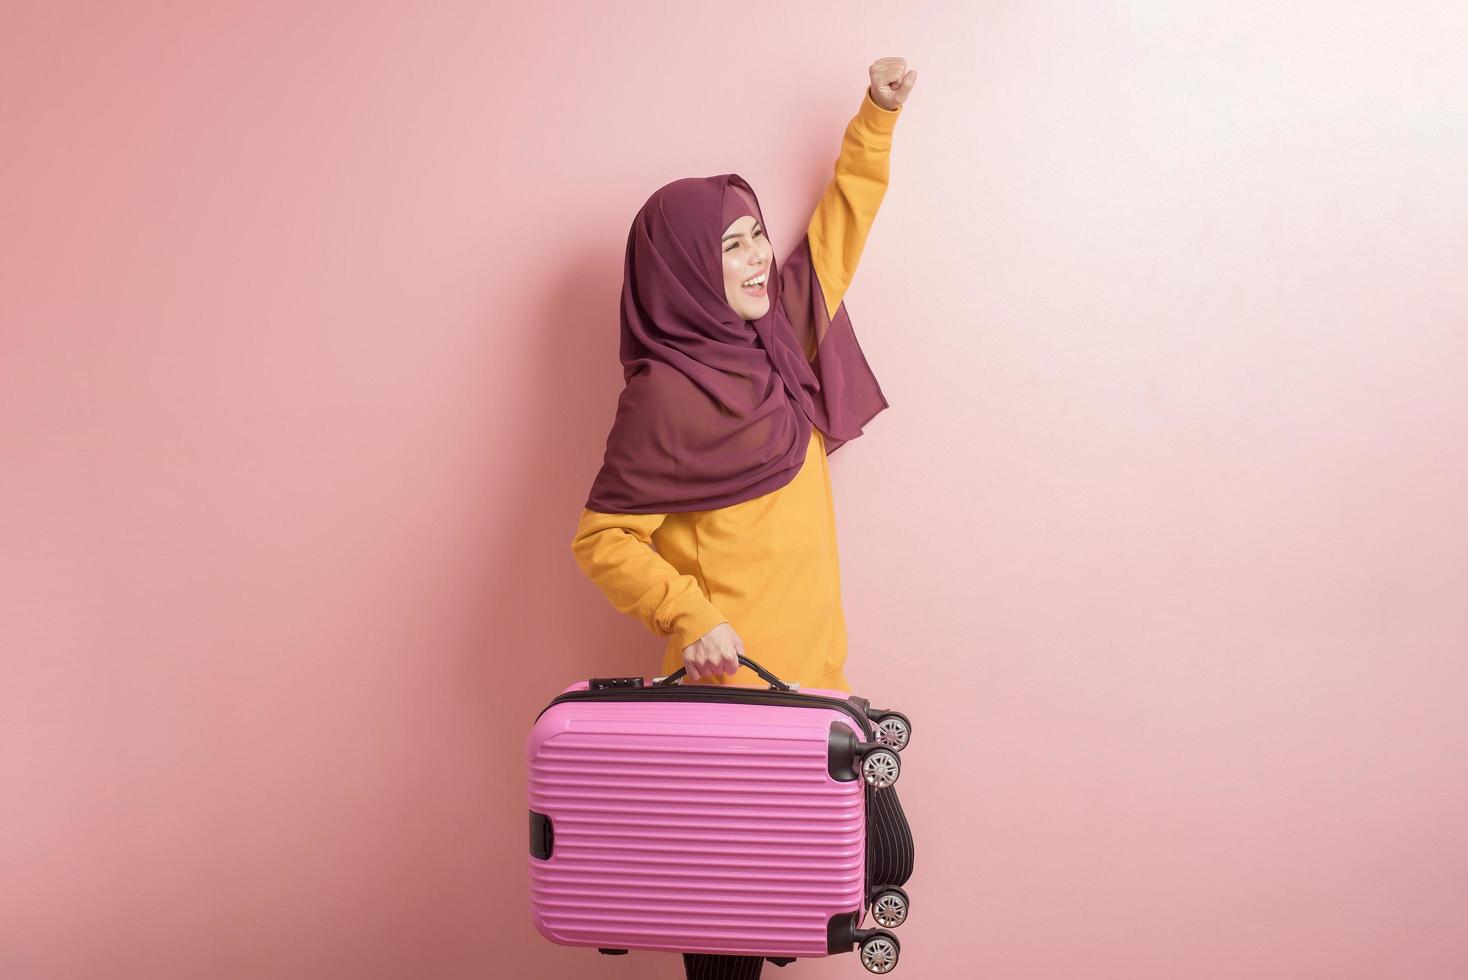 muslimische frau mit hijab hält gepäck auf rosa hintergrund, menschen reisen konzept foto